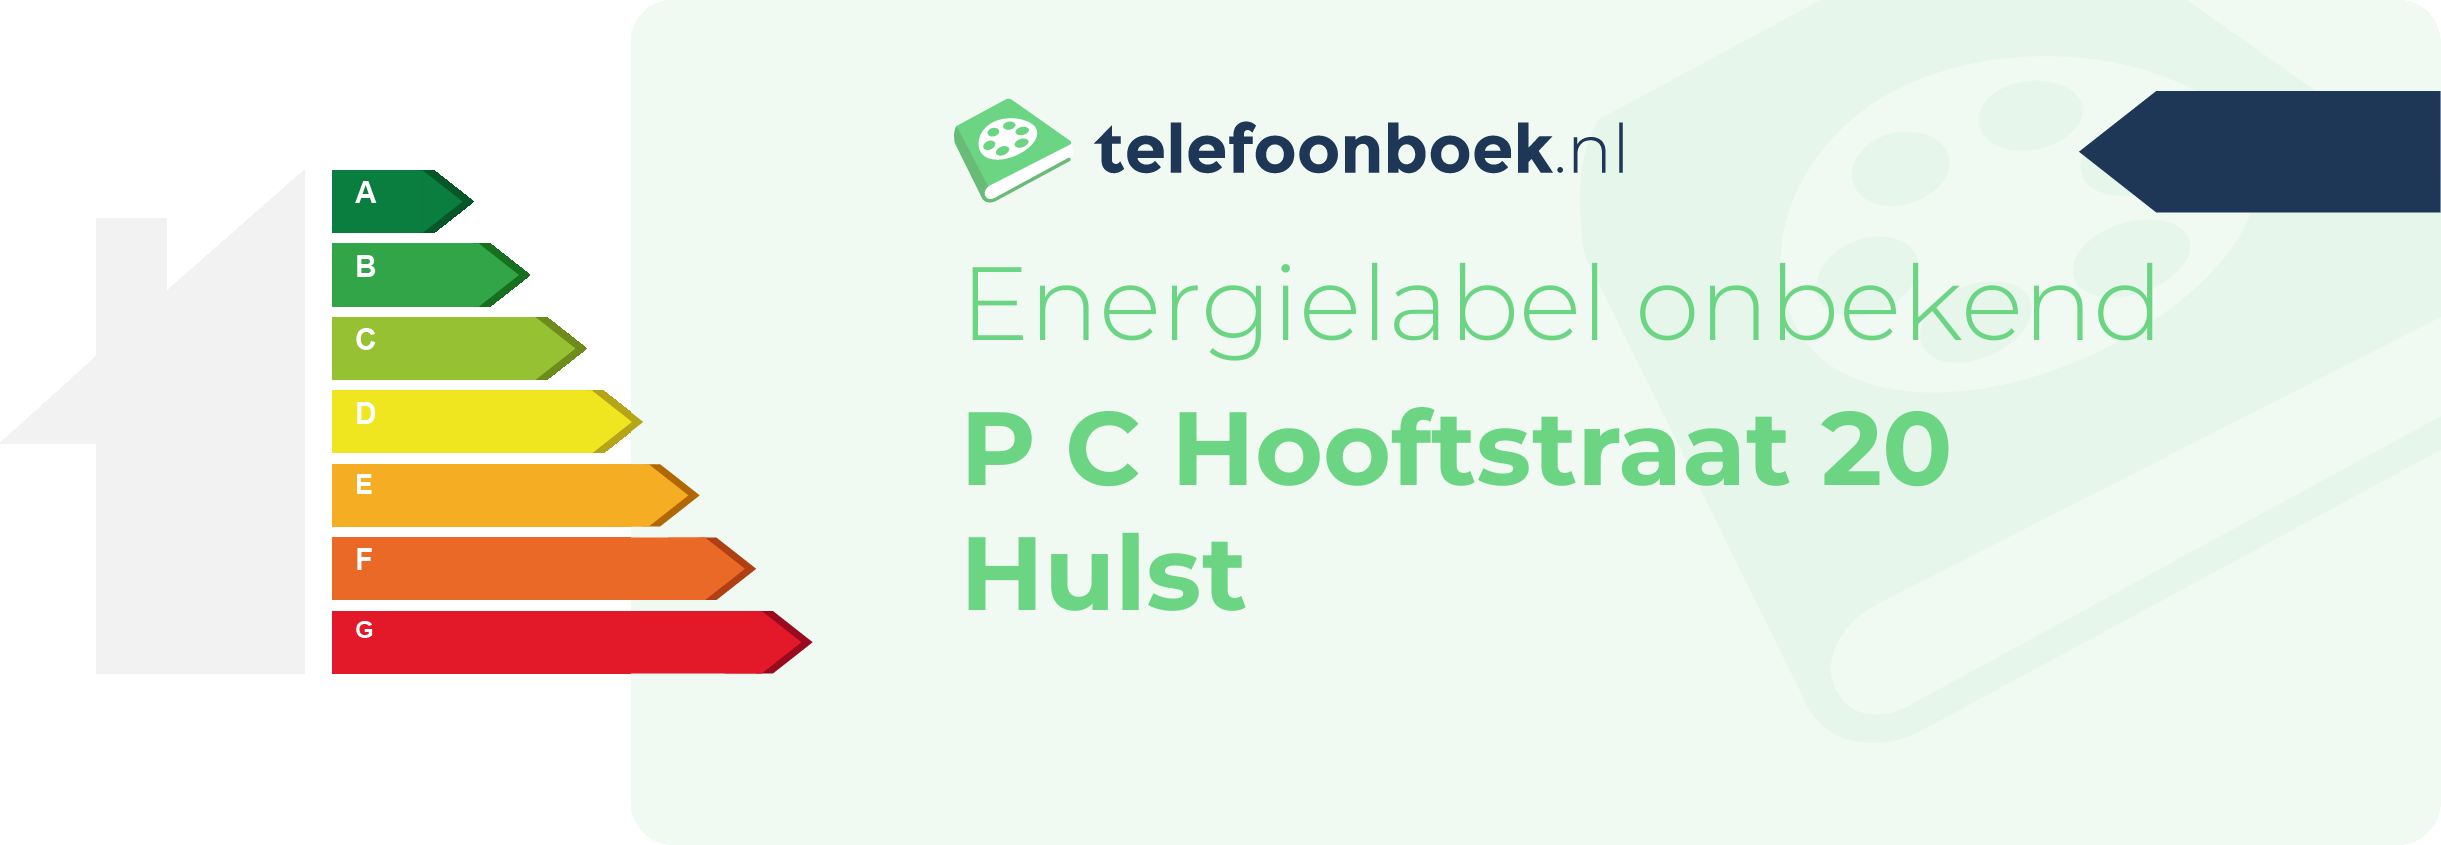 Energielabel P C Hooftstraat 20 Hulst